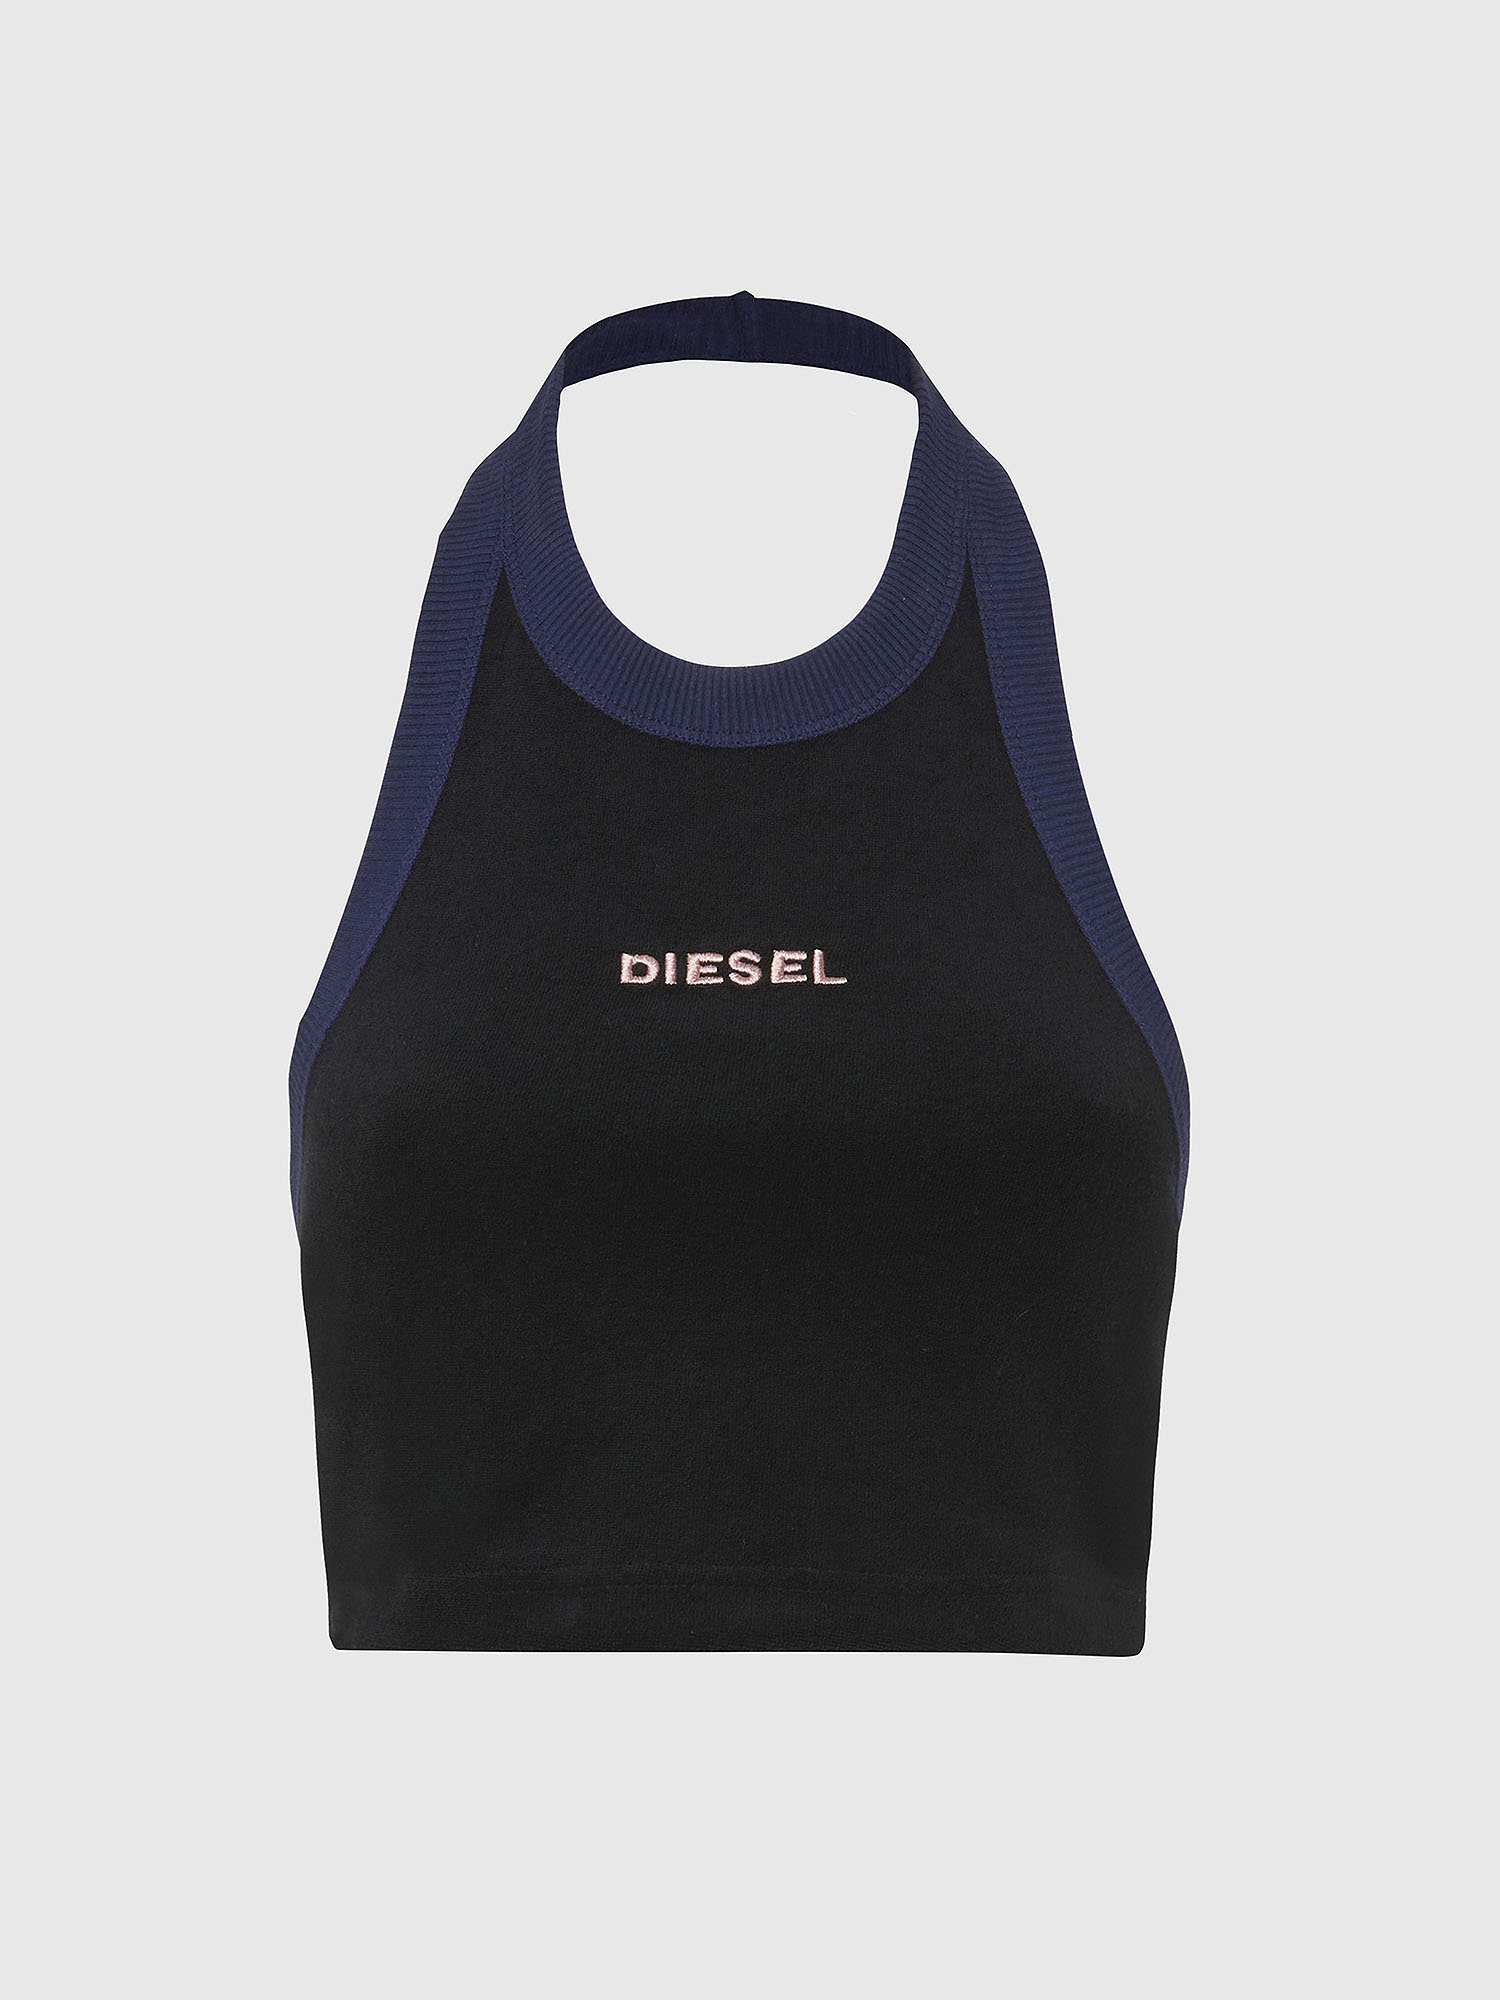 Diesel - UFTK-ASHLY, Black - Image 1